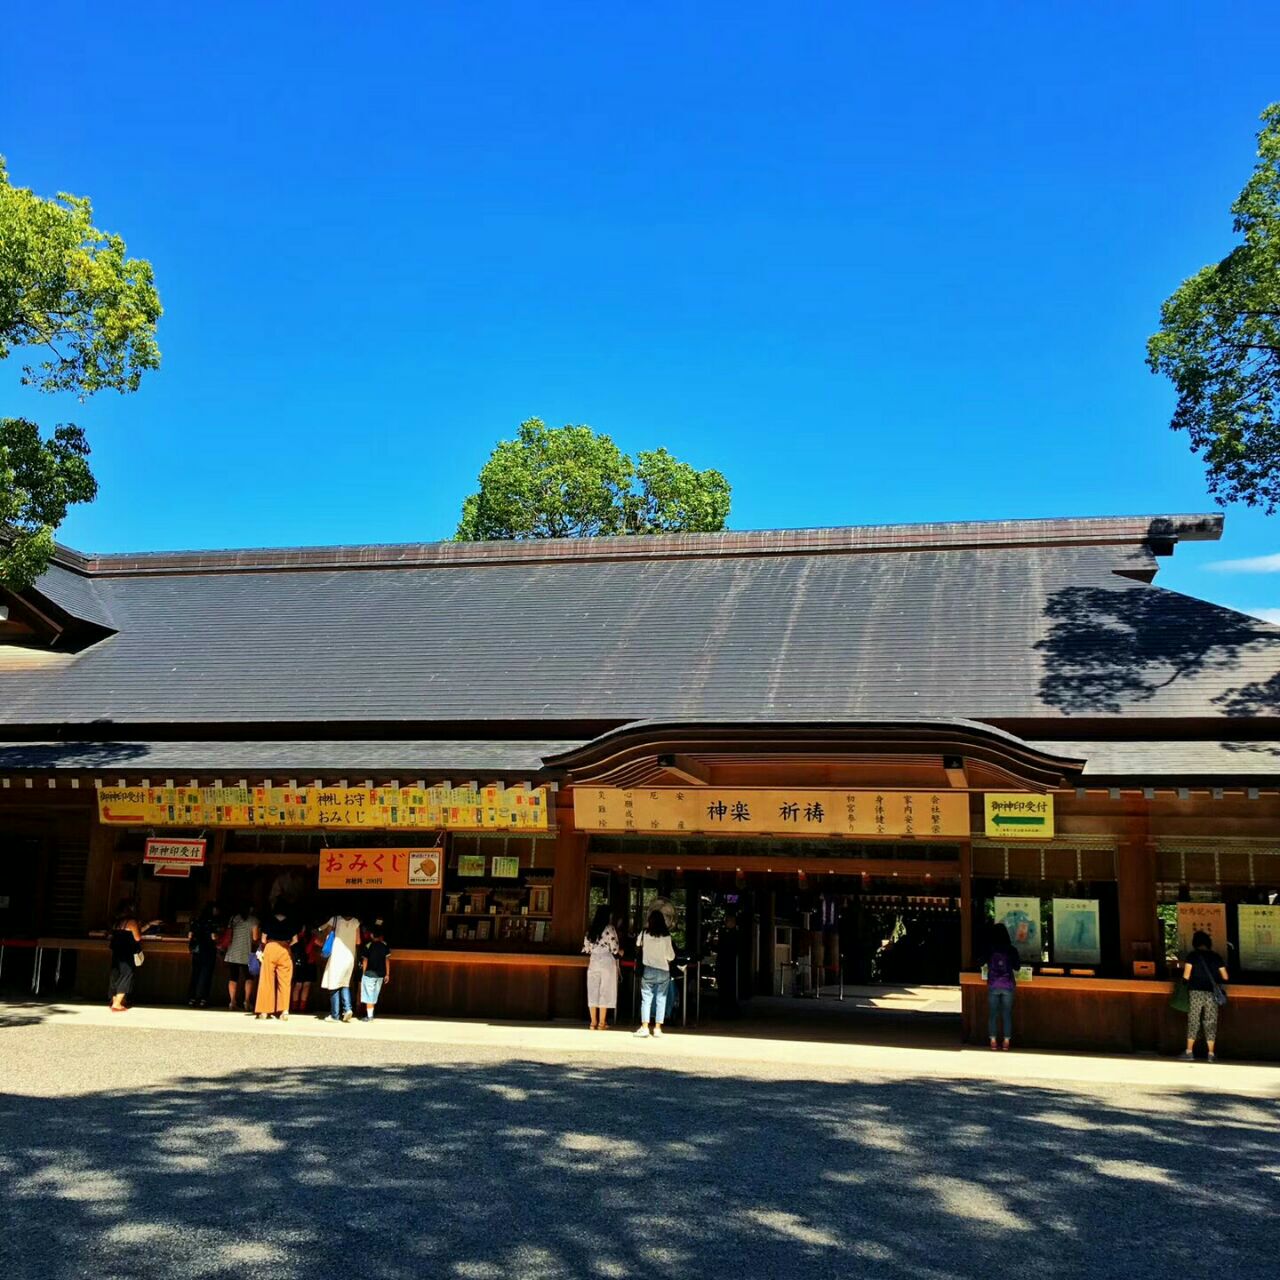 【携程攻略】名古屋热田神宫景点,热田神宫是日本的之